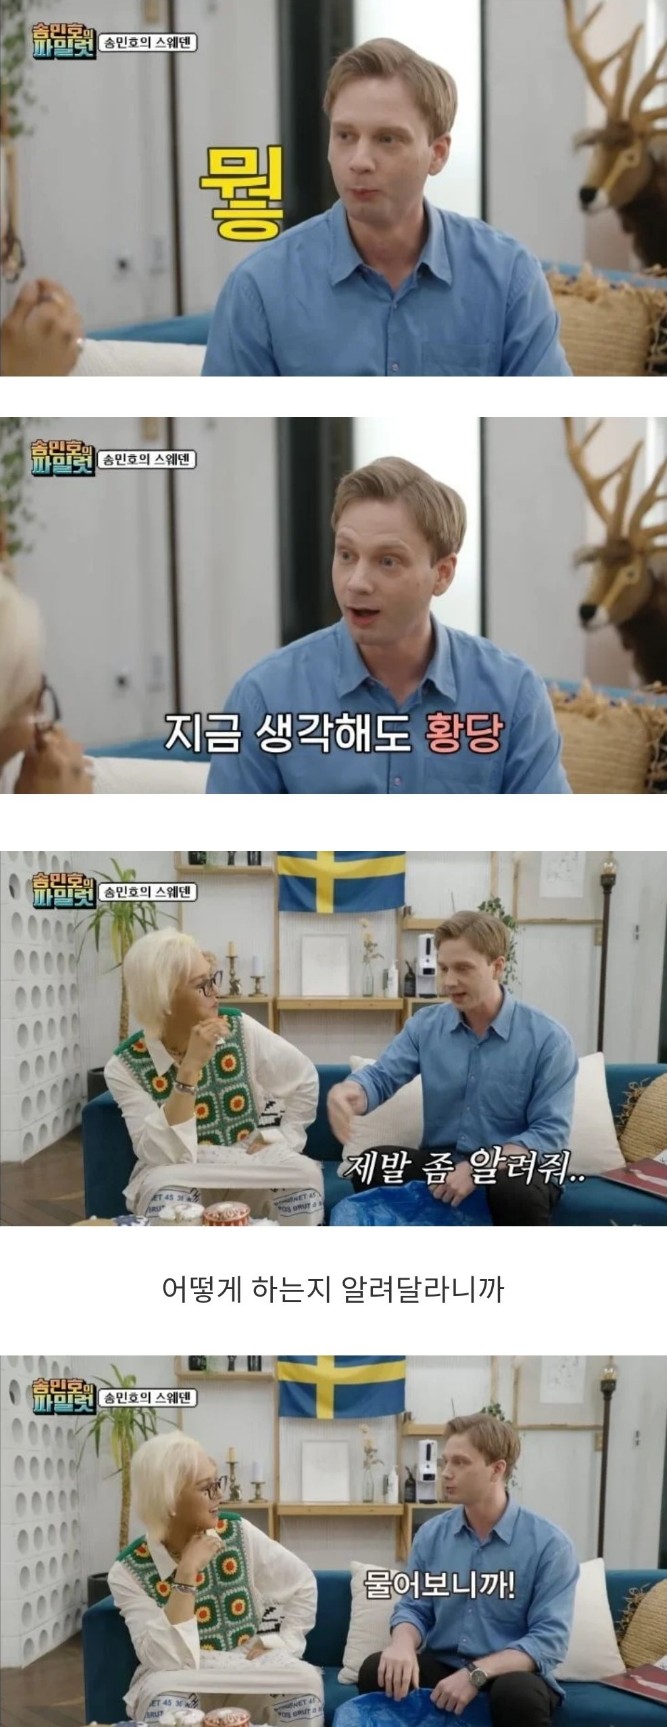 스웨덴 유학생이 한국말을 빨리 배운 이유